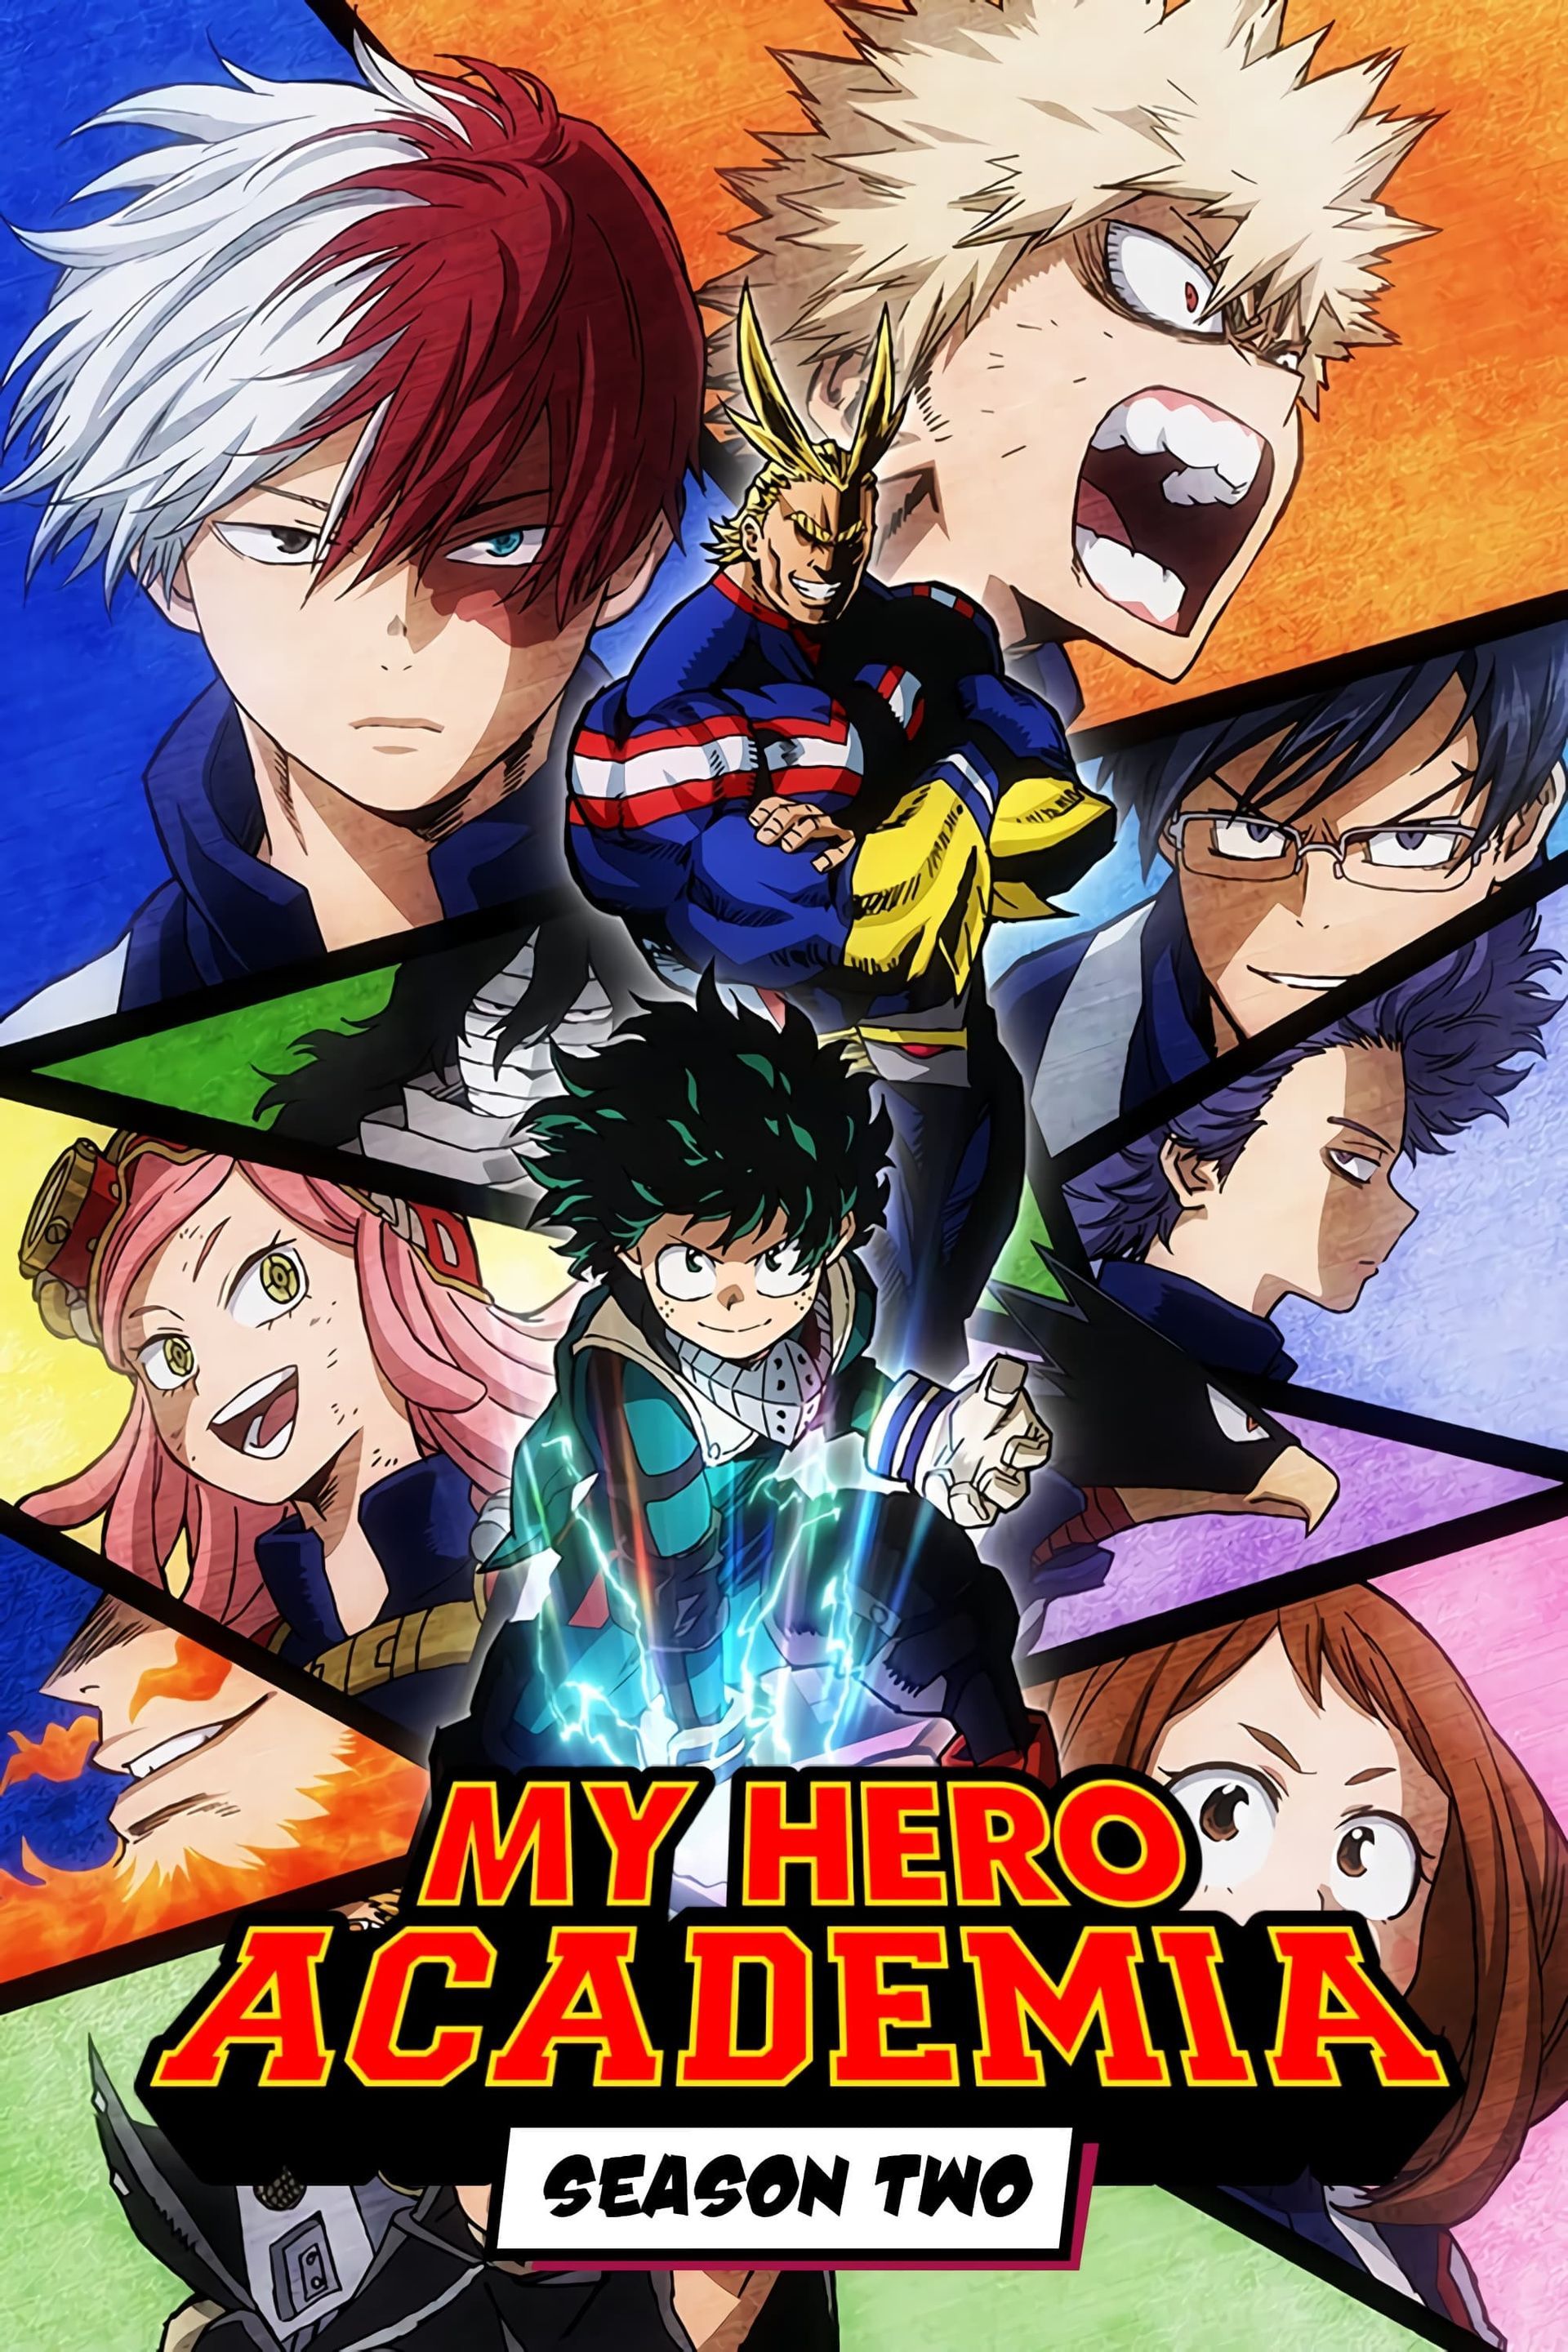 Watch My Hero Academia Episode 11 Online - Game Over